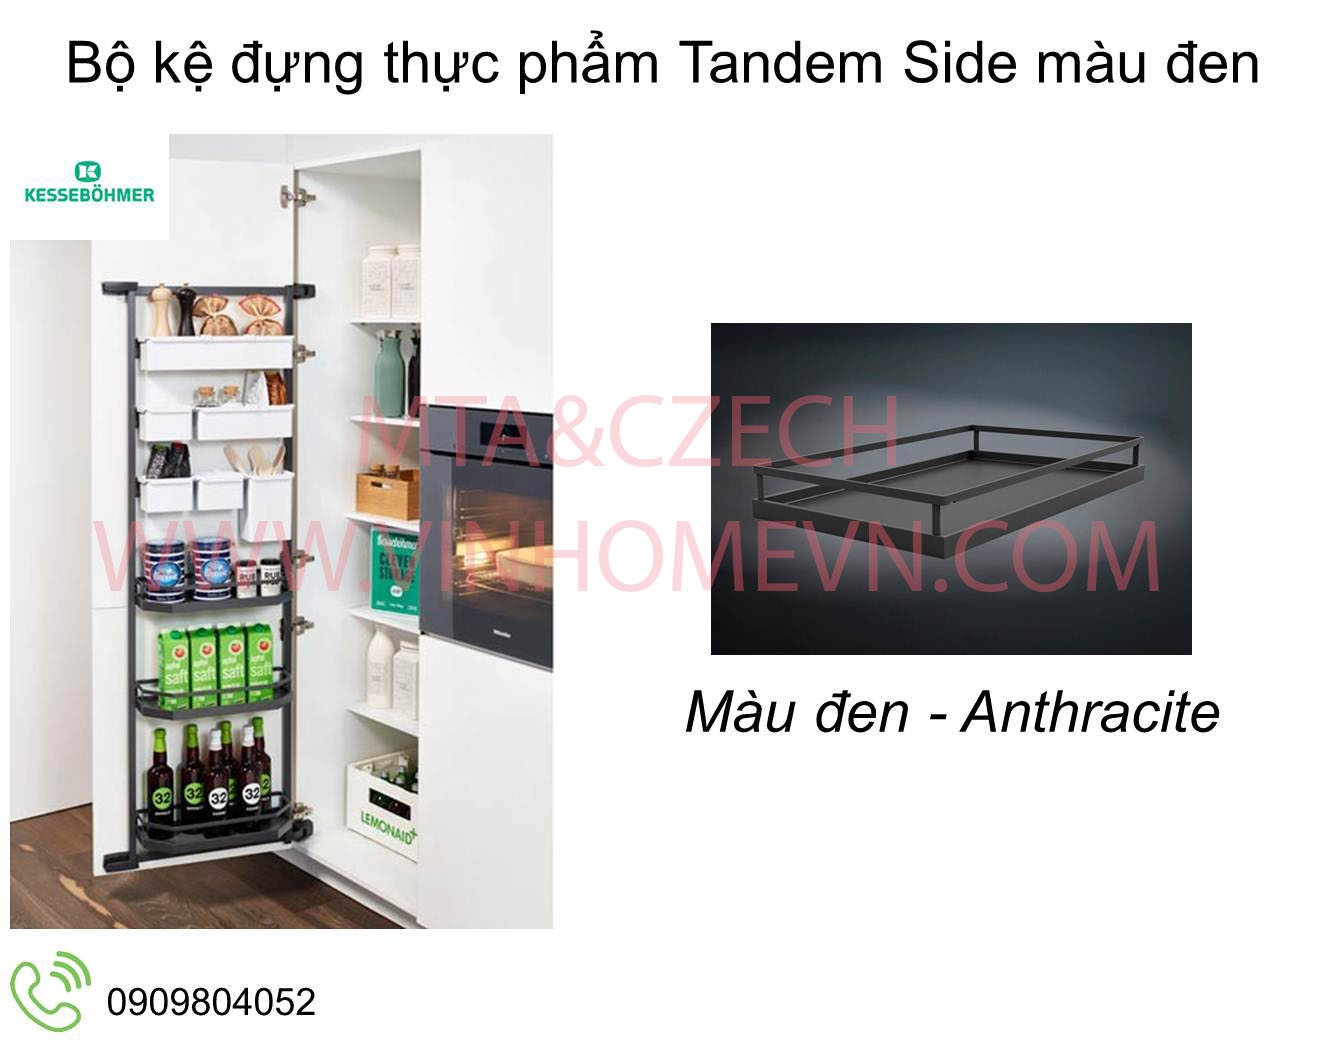 Bộ kệ đứng thực phẩm Tandem Side màu đen 3 khay MSP 545.02.412